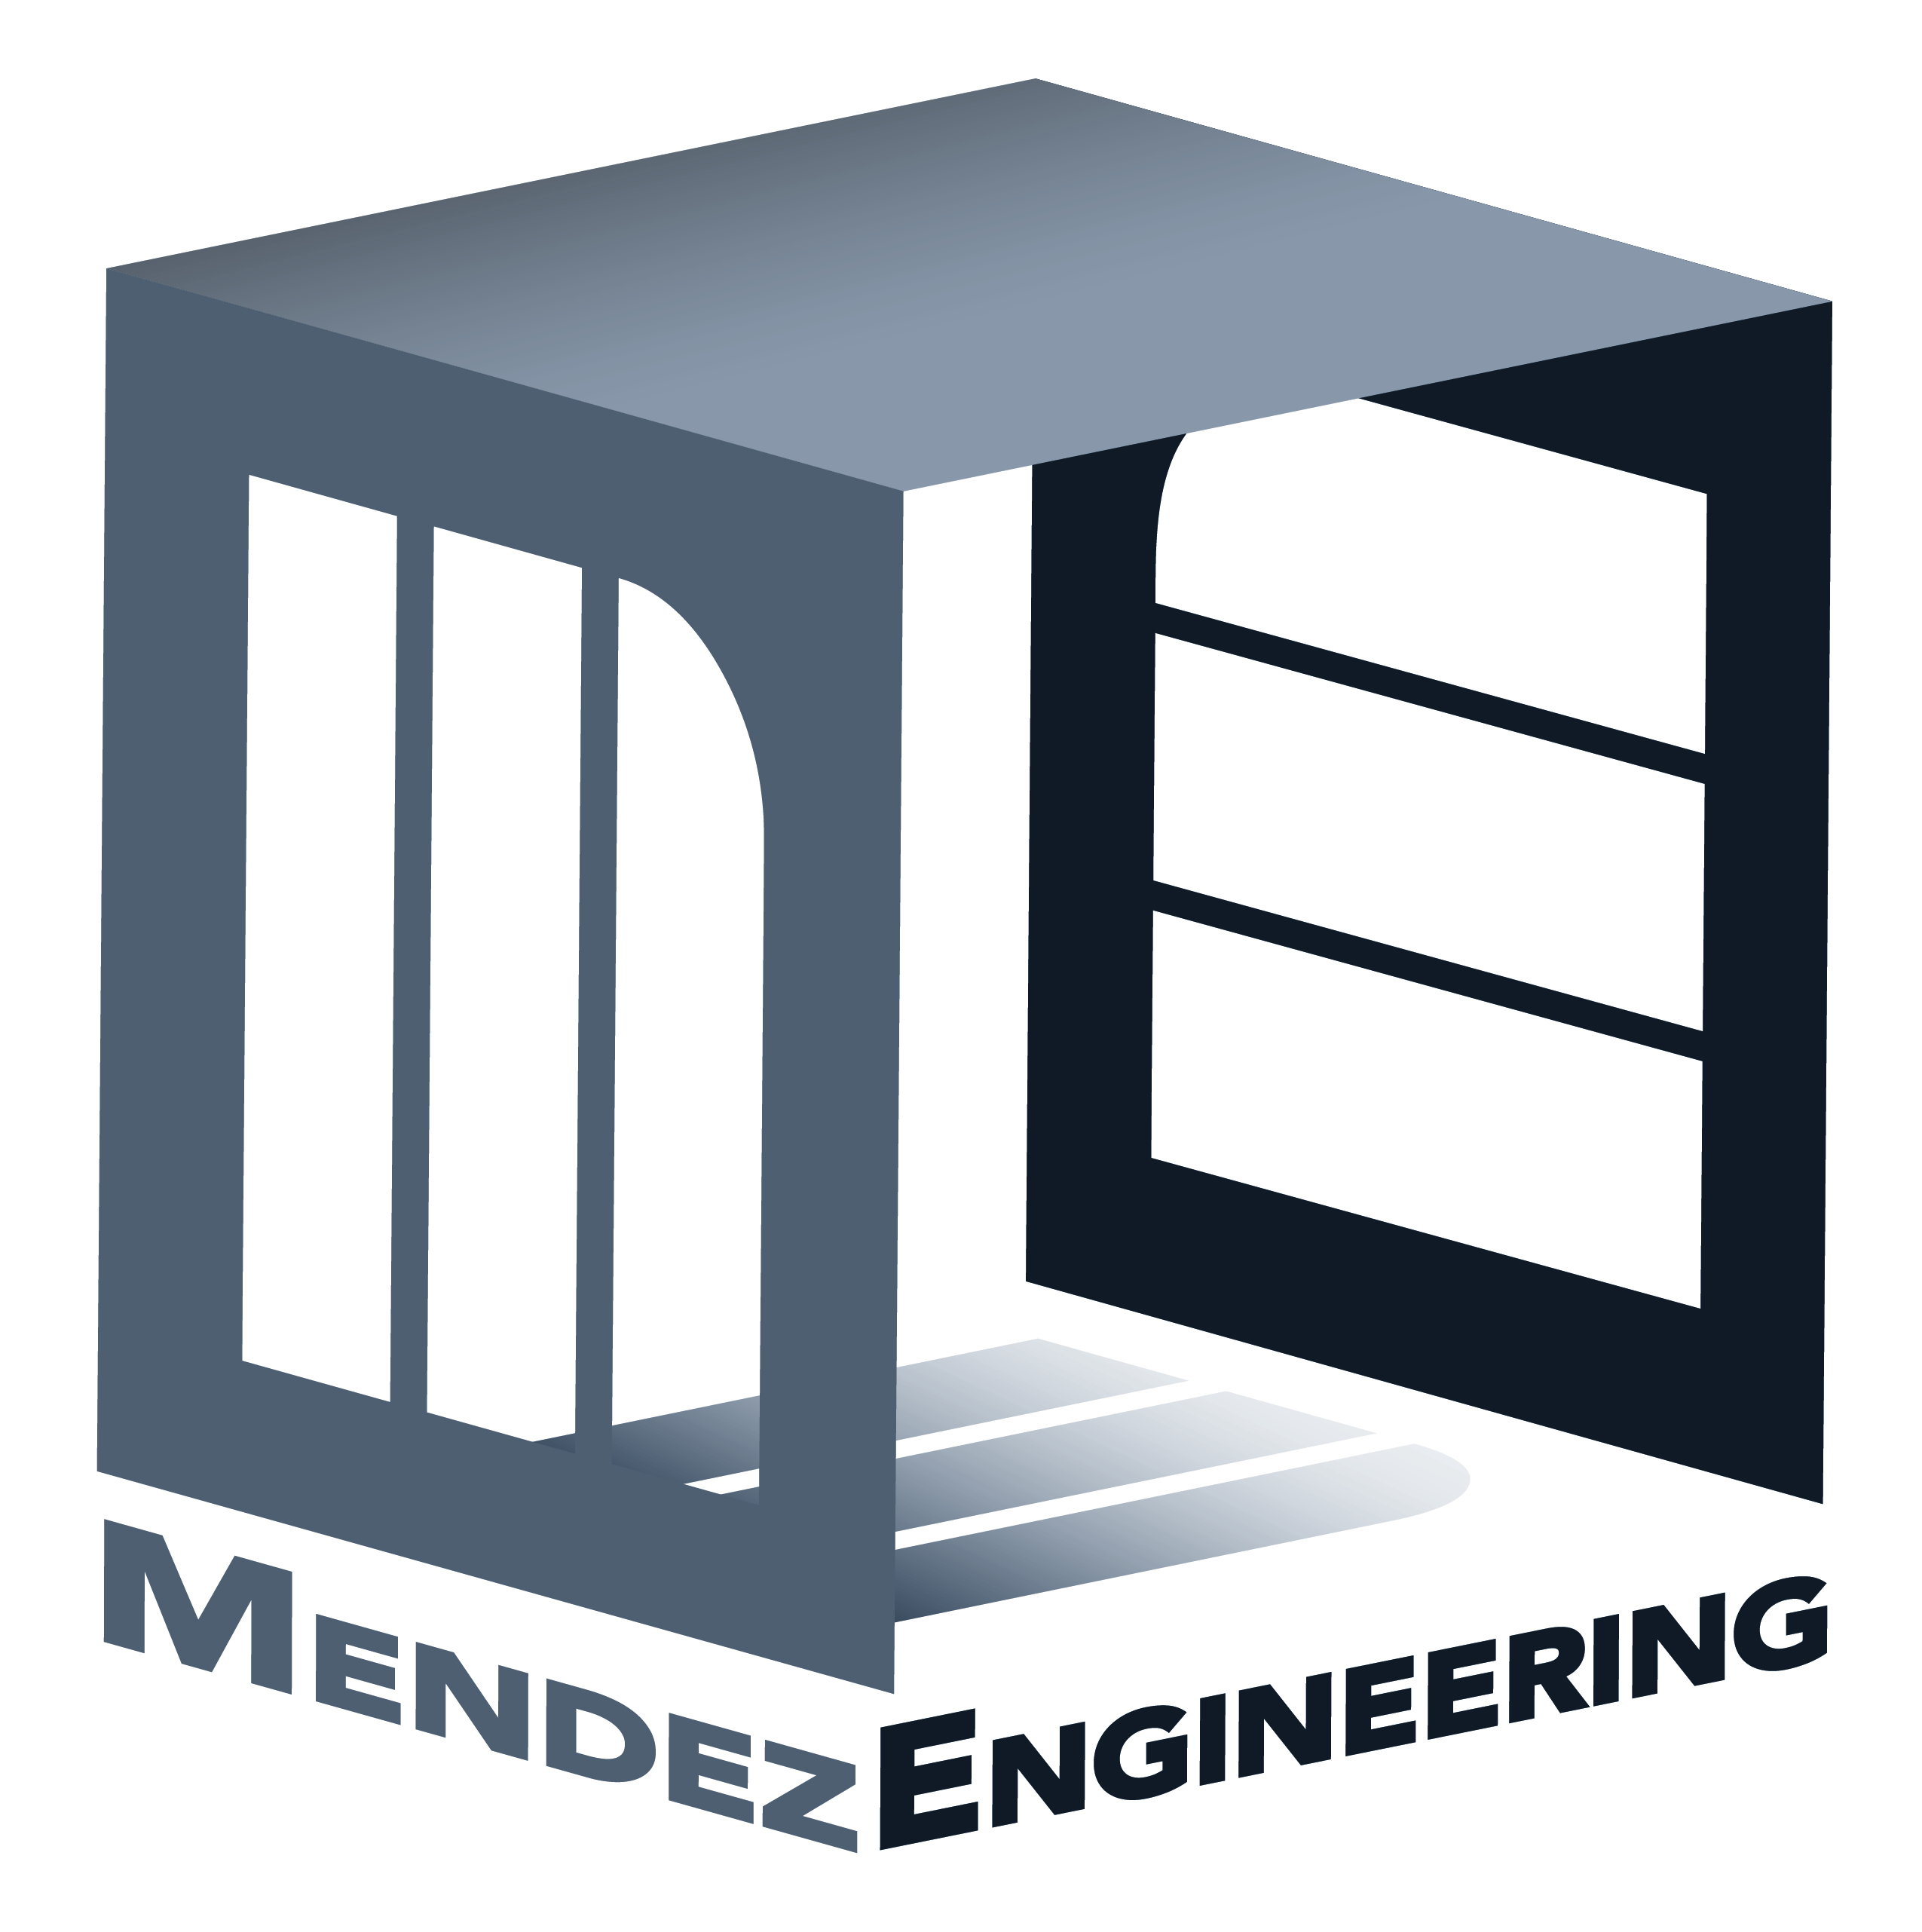 Mendez Engineering